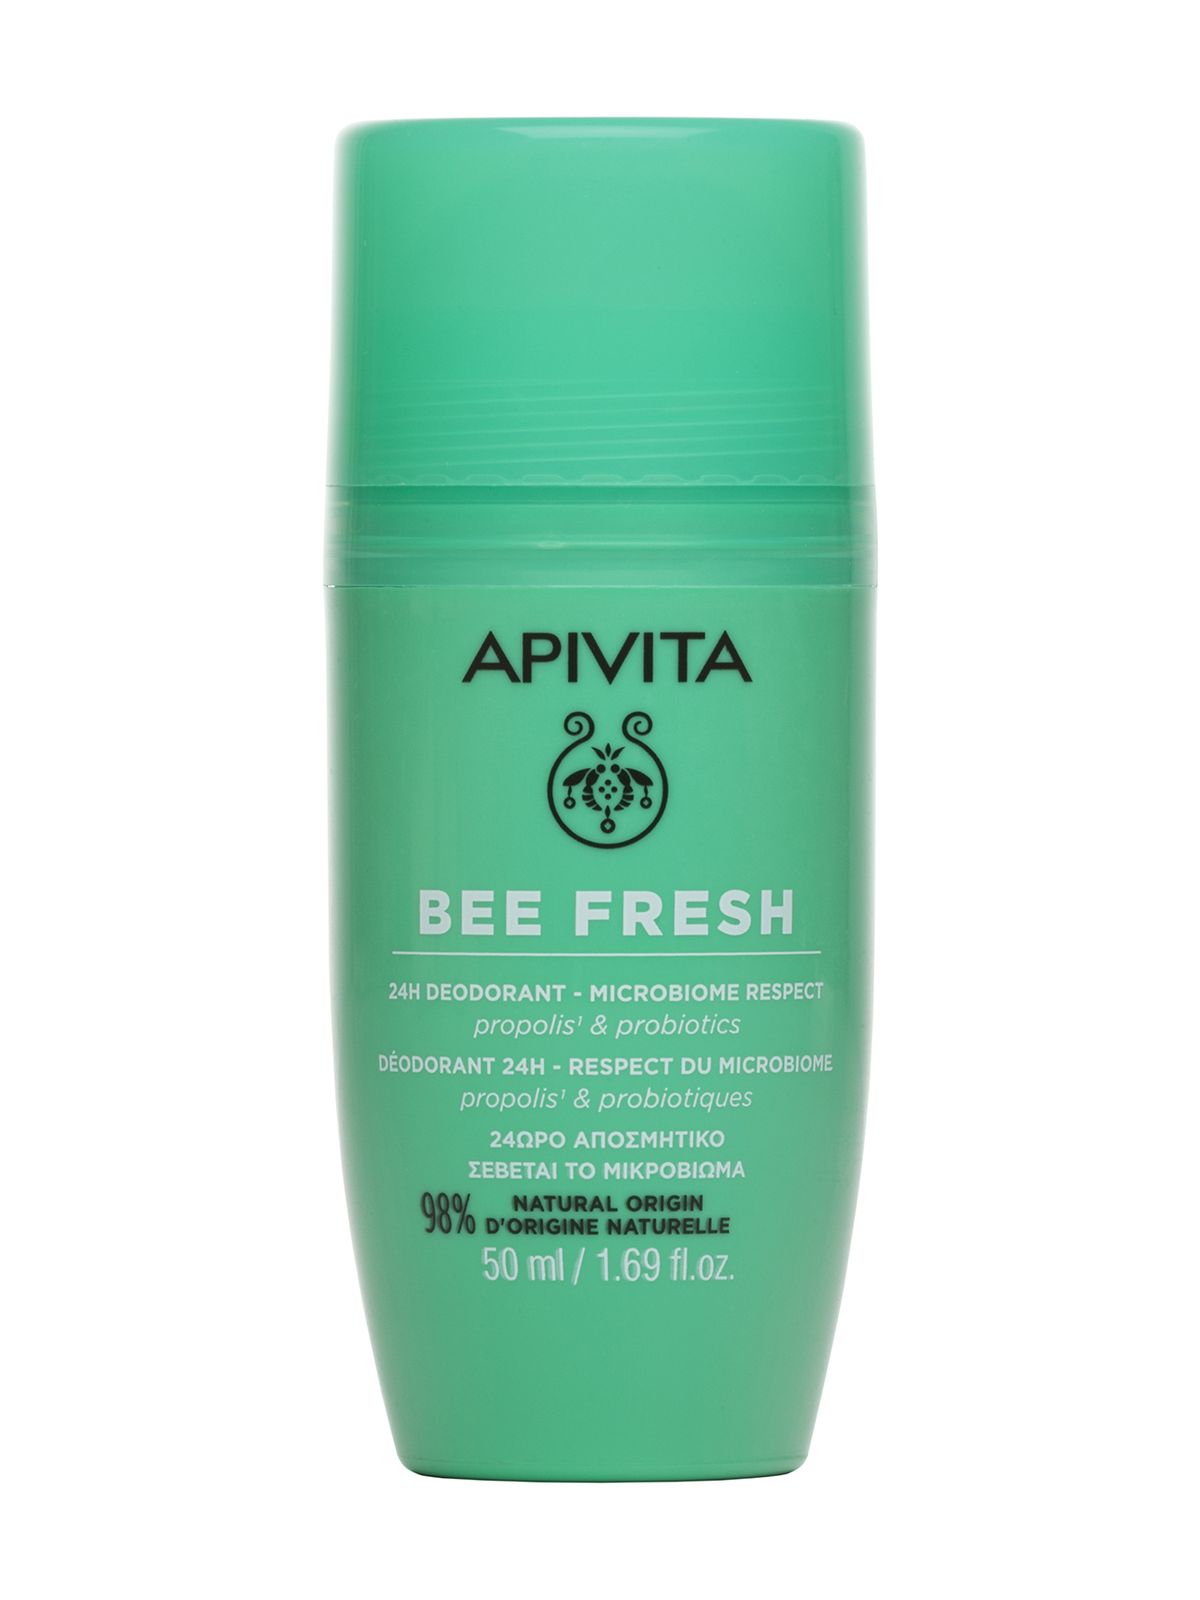 Дезодорант Apivita Bee Fresh 24H Deodorant Microbiome Respect Propolis & Probiotics апивита дезодорант 24 часа защиты с прополисом и пробиотиками bee fresh 50